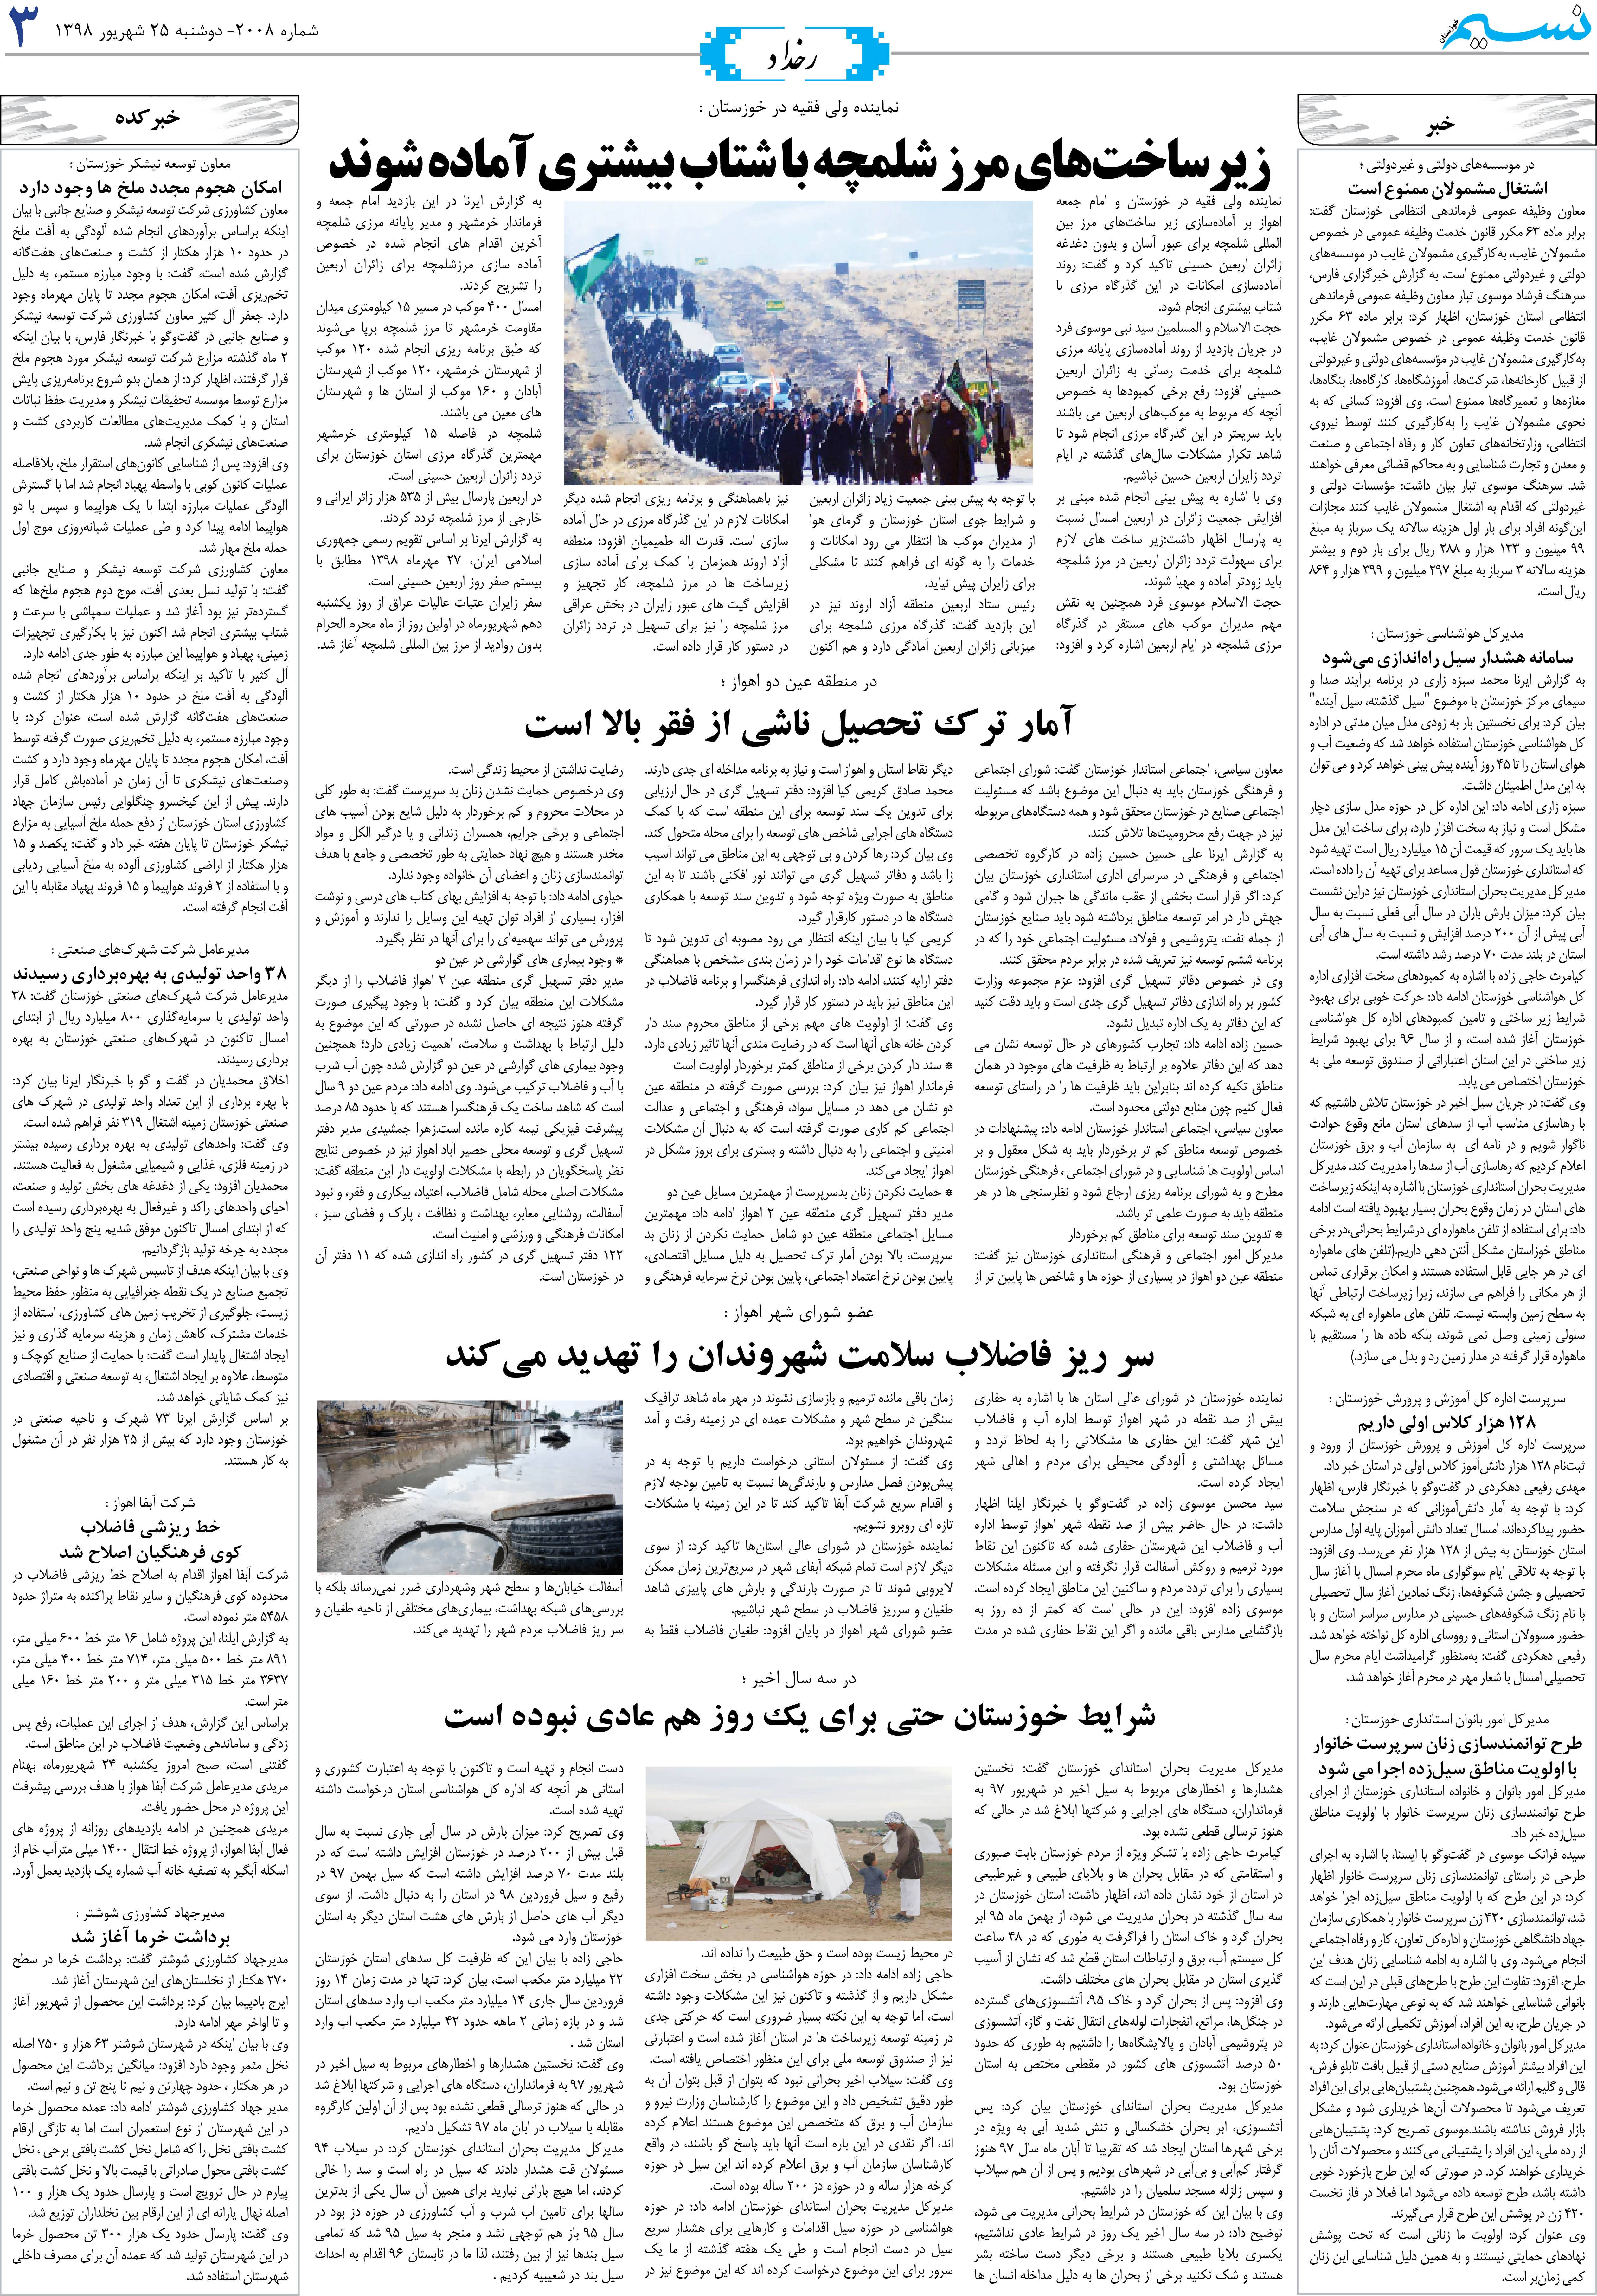 صفحه رخداد روزنامه نسیم شماره 2008